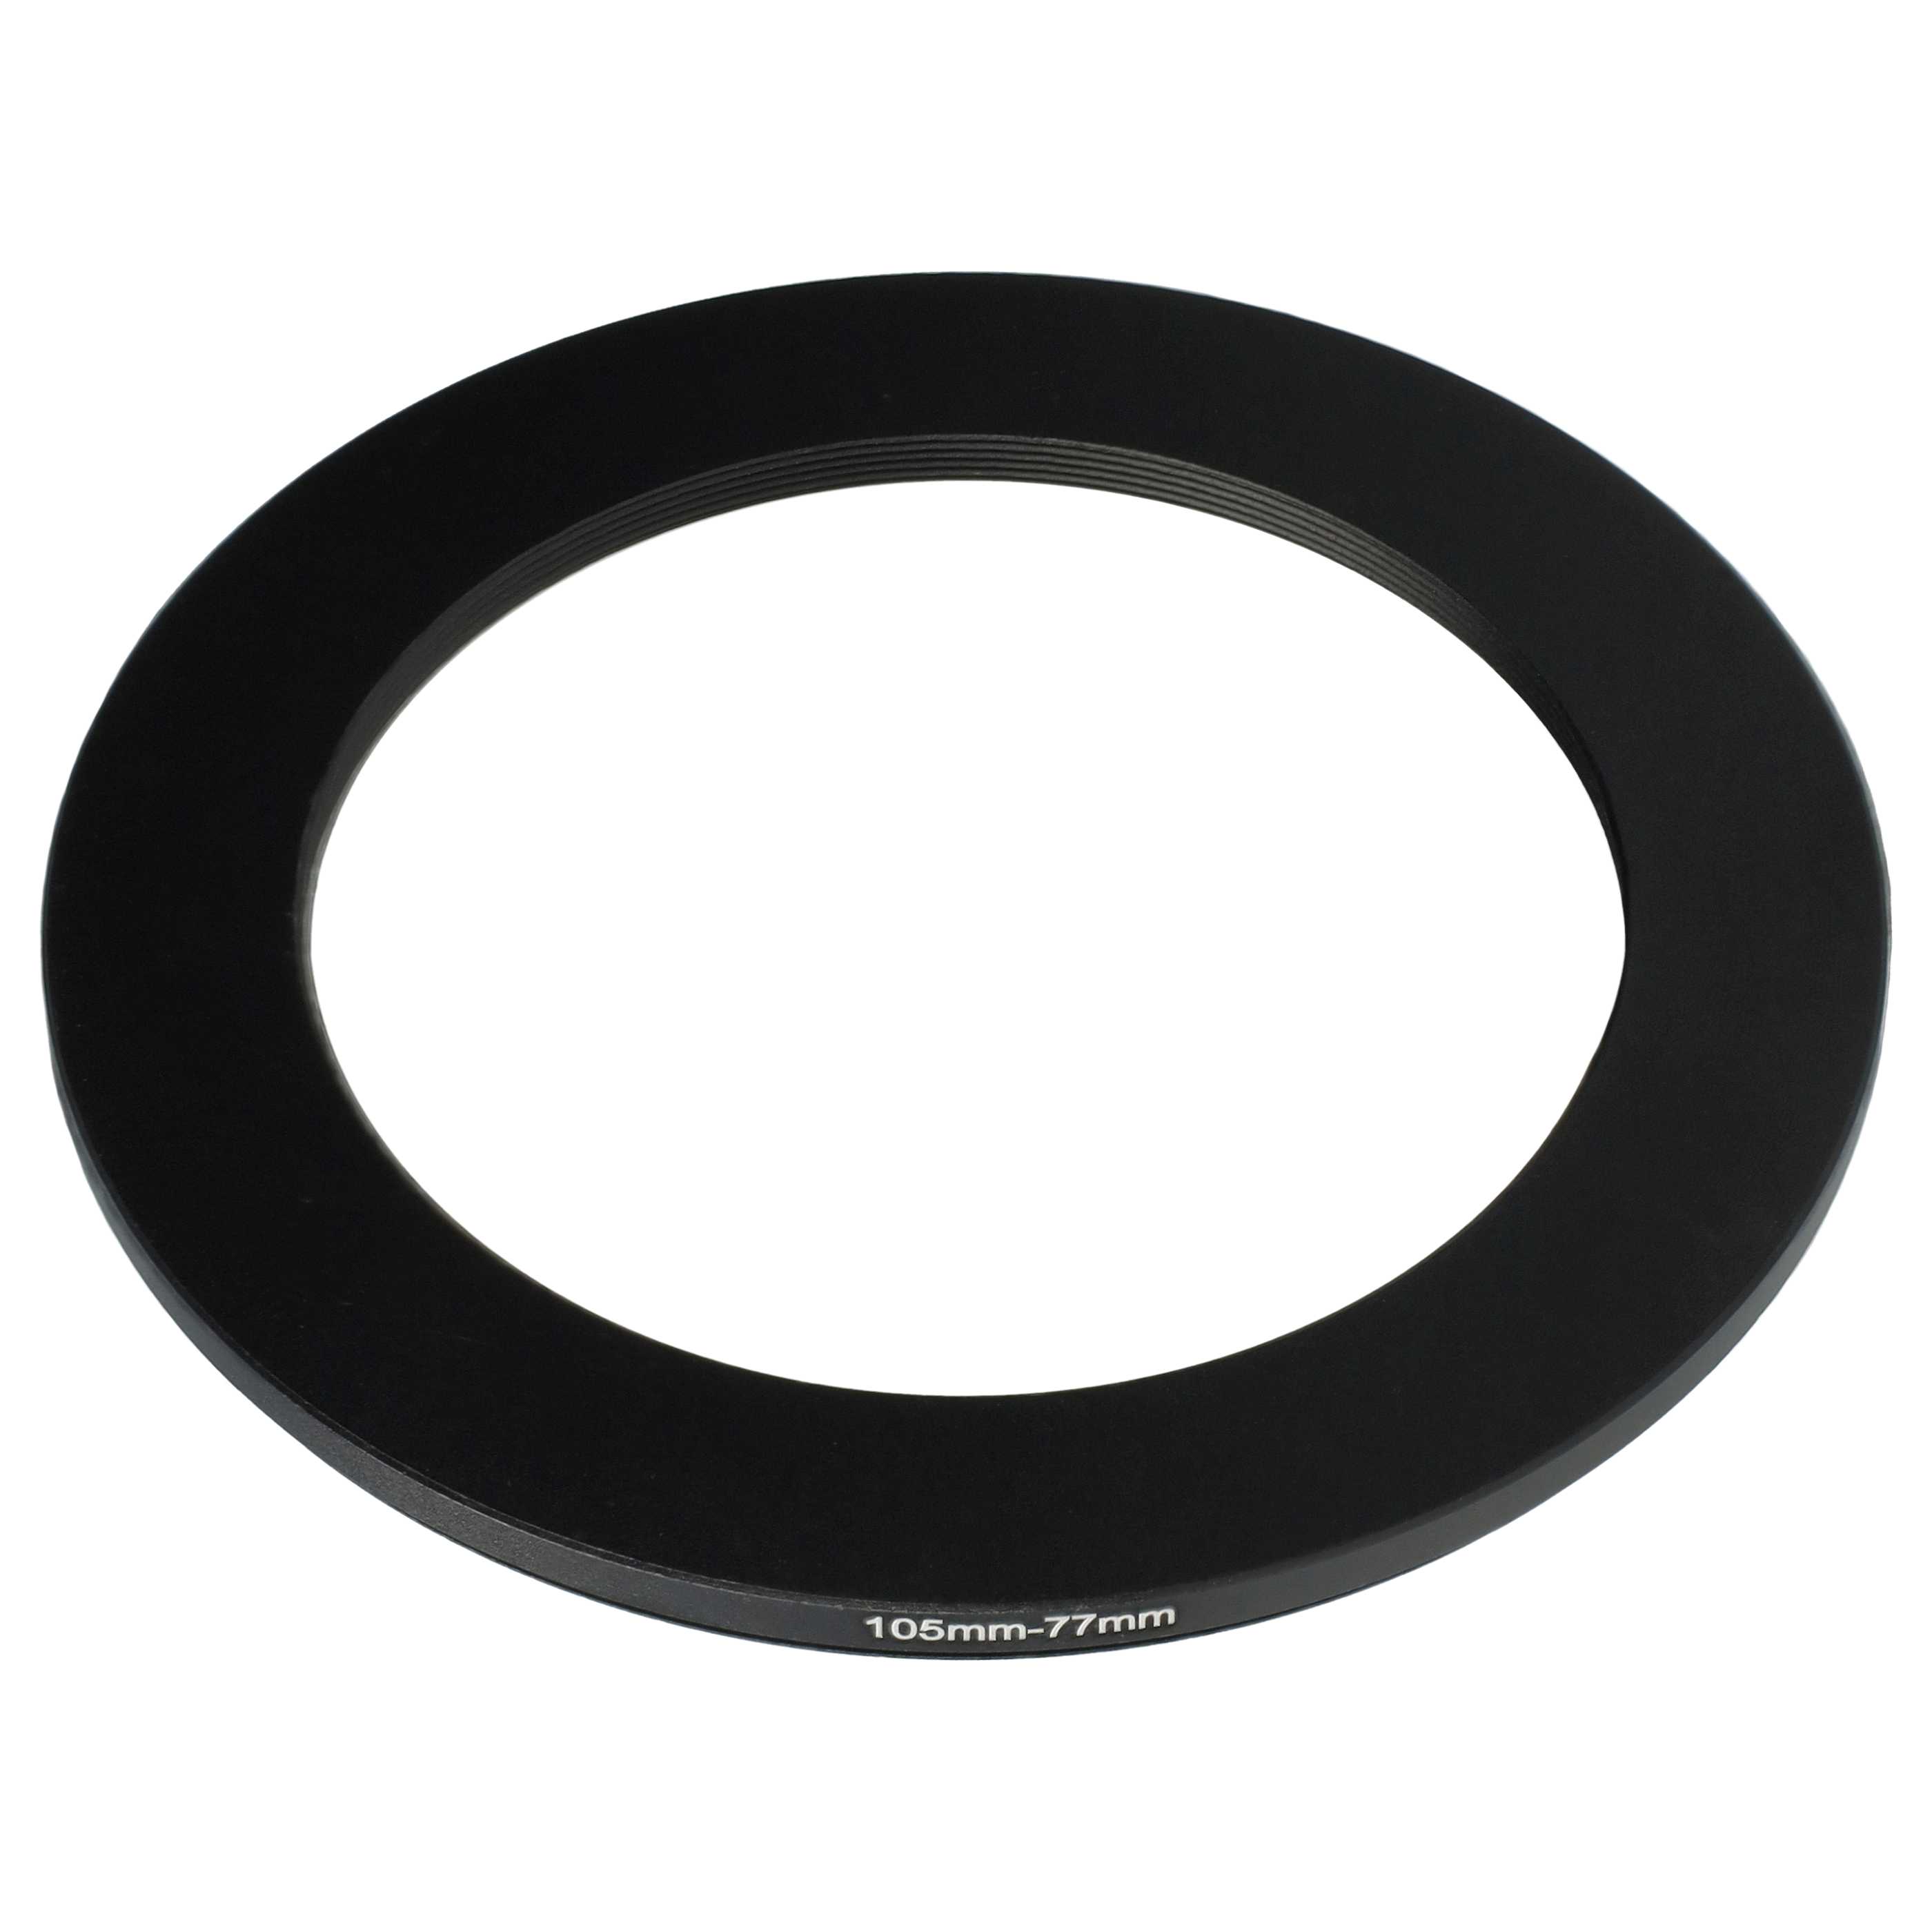 Anillo adaptador Step Down de 105 mm a 77 mm para objetivo de la cámara - Adaptador de filtro, metal, negro